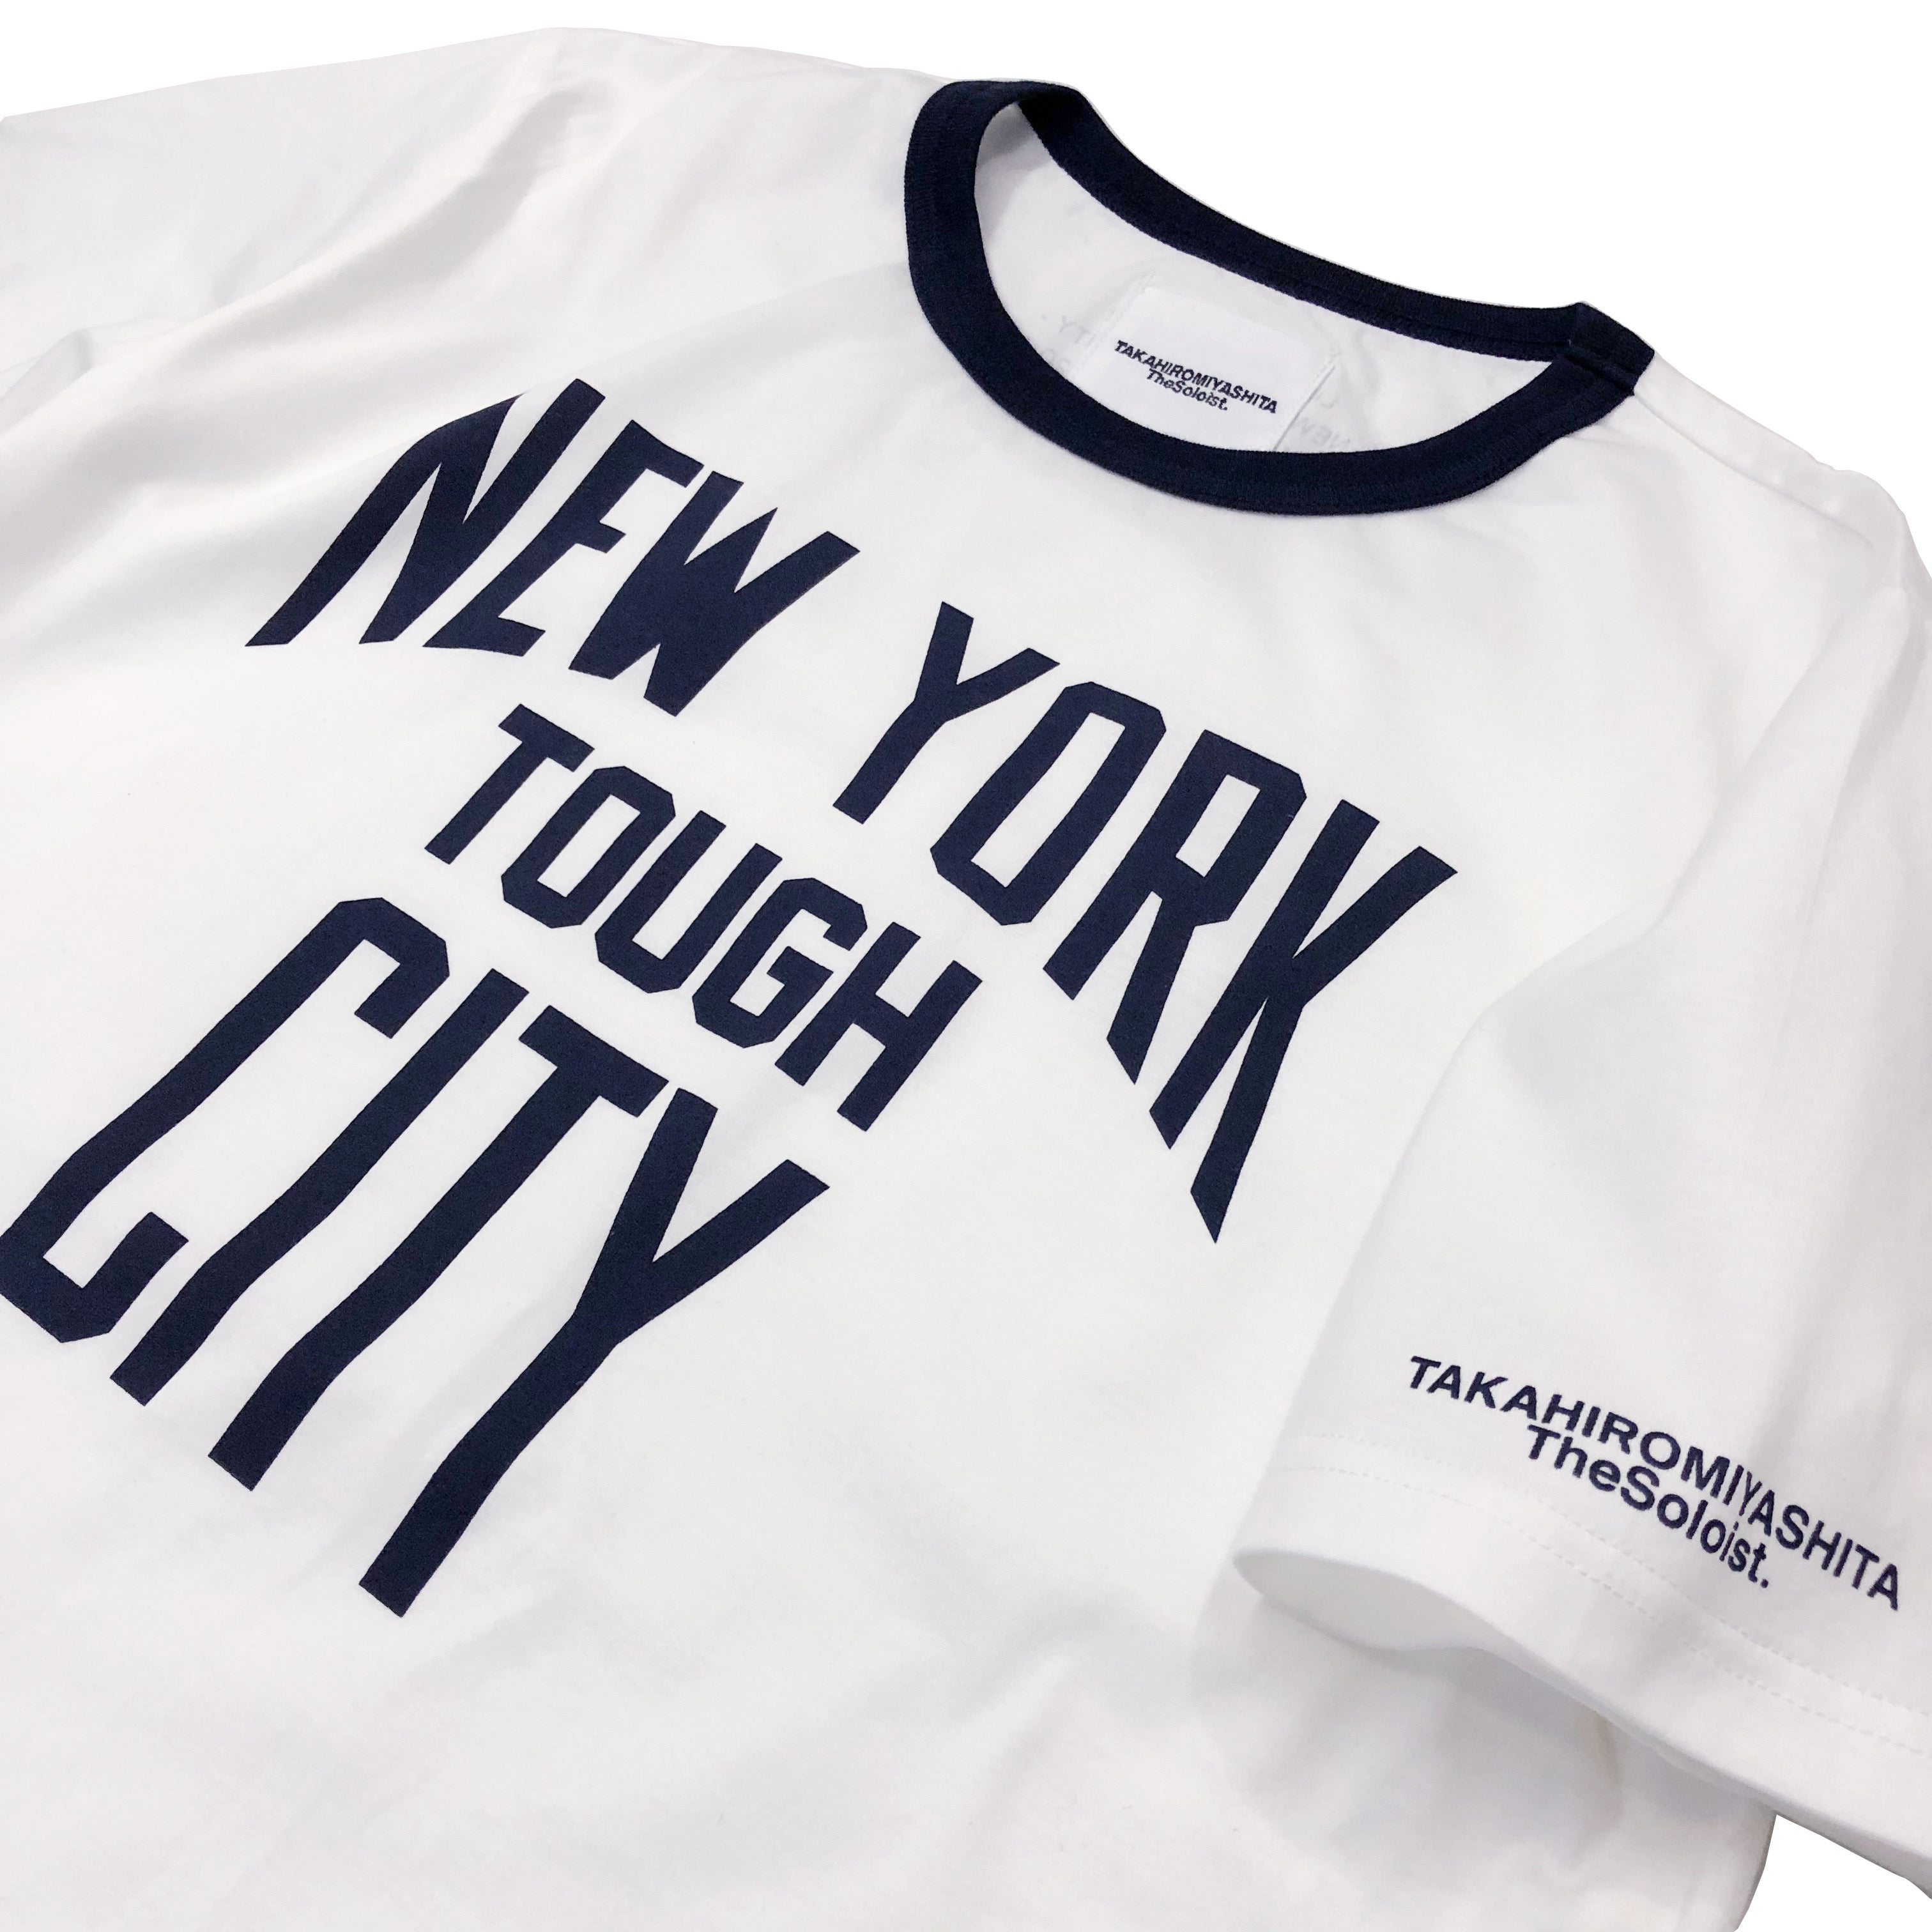 ソリストが 50% オフ。 「ニューヨークシティタフ」リンガーTシャツ